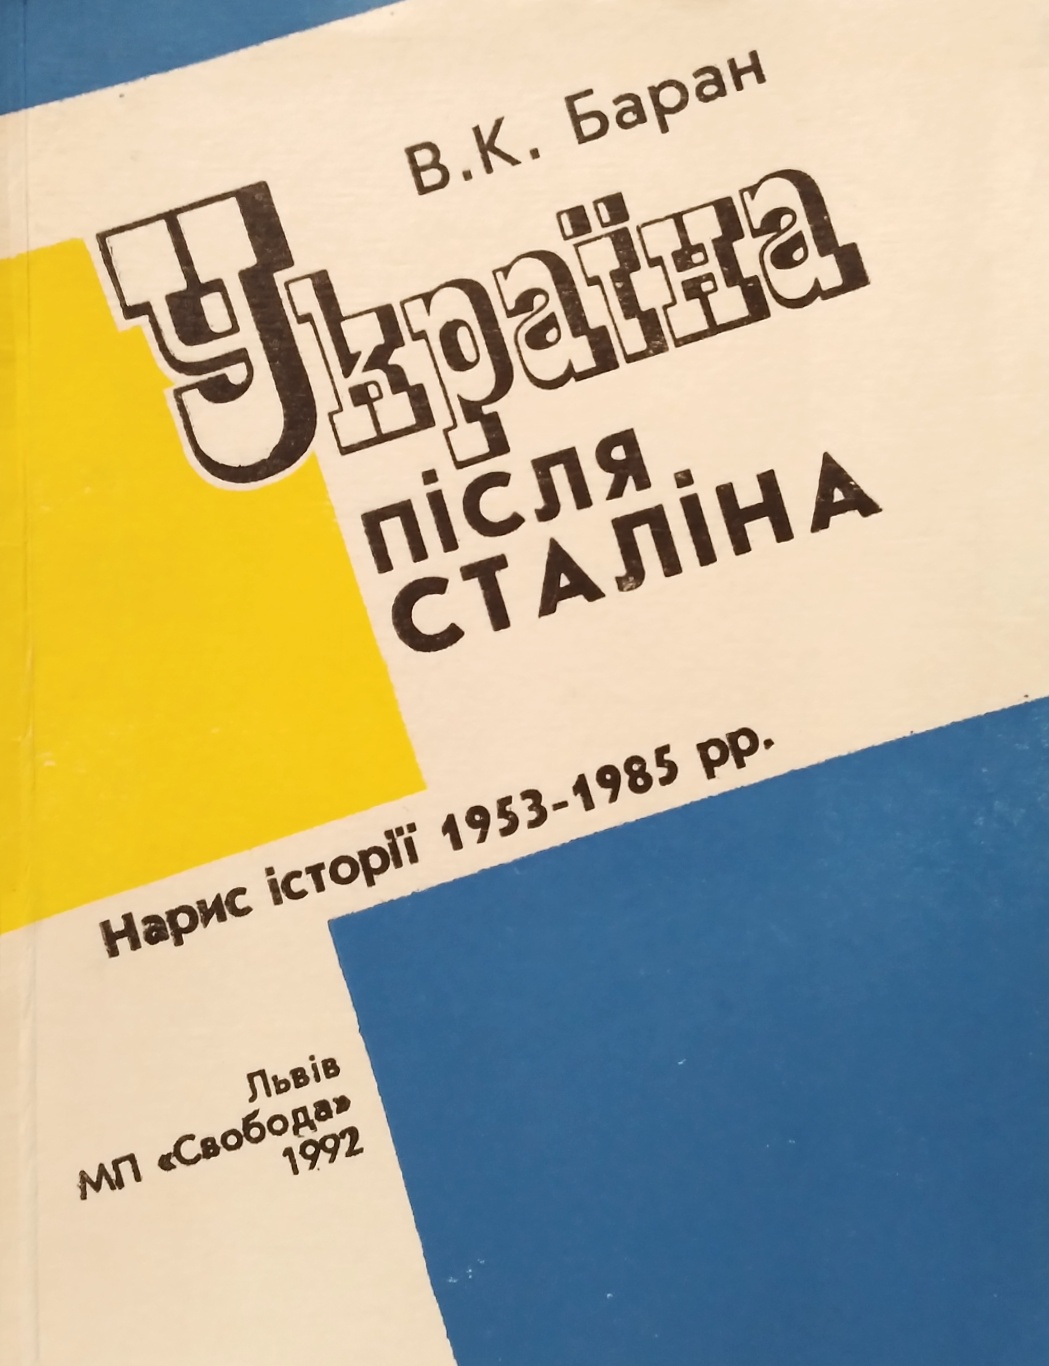   :   1953-1985 .